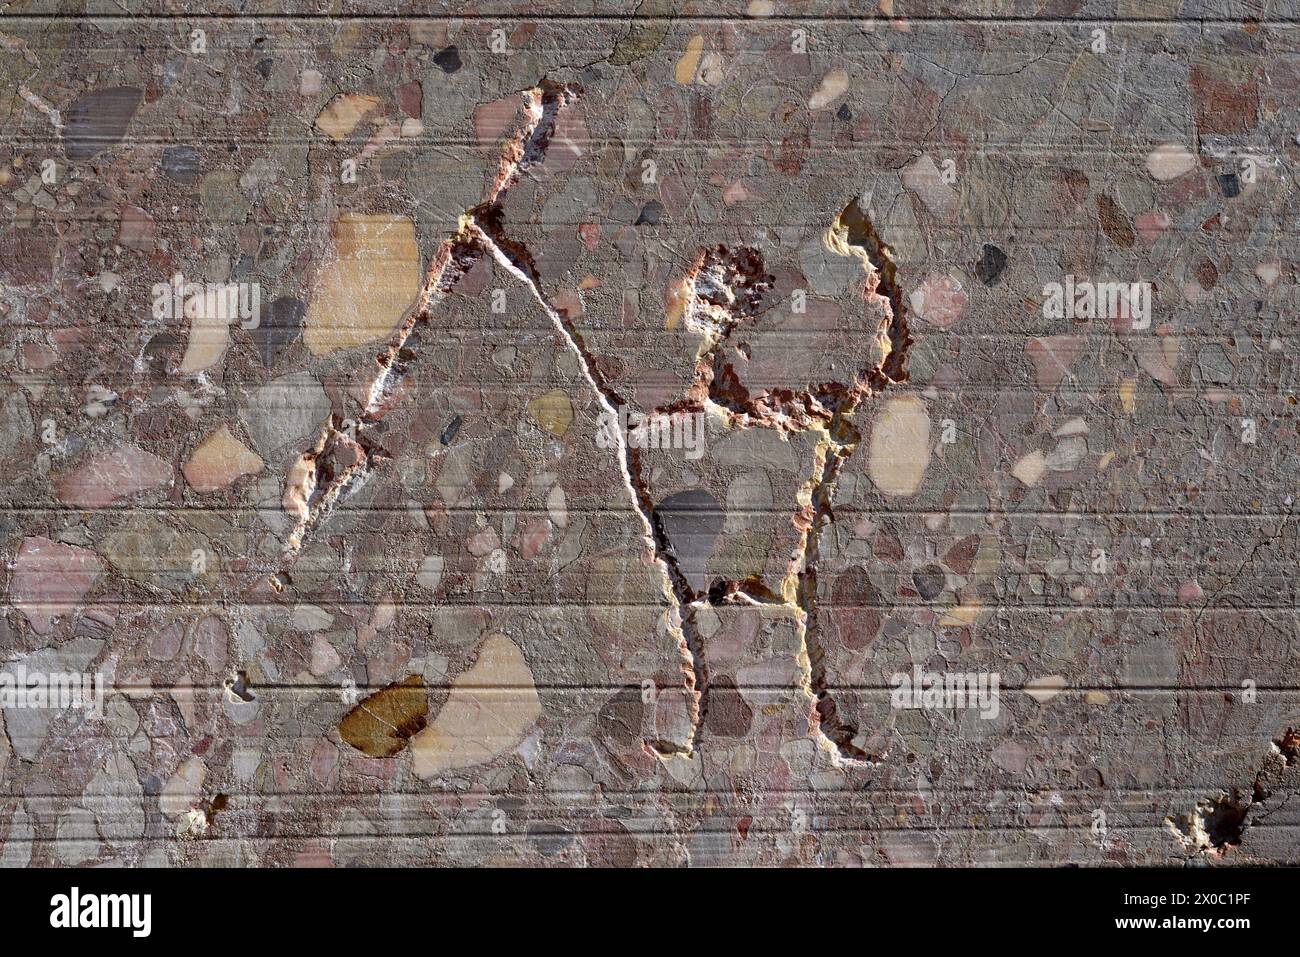 Graffiti contemporain ou gravure en marbre carrière d'homme primitif à la lance ou à la flèche, montagne Sainte-victoire près d'Aix-en-Provence France Banque D'Images